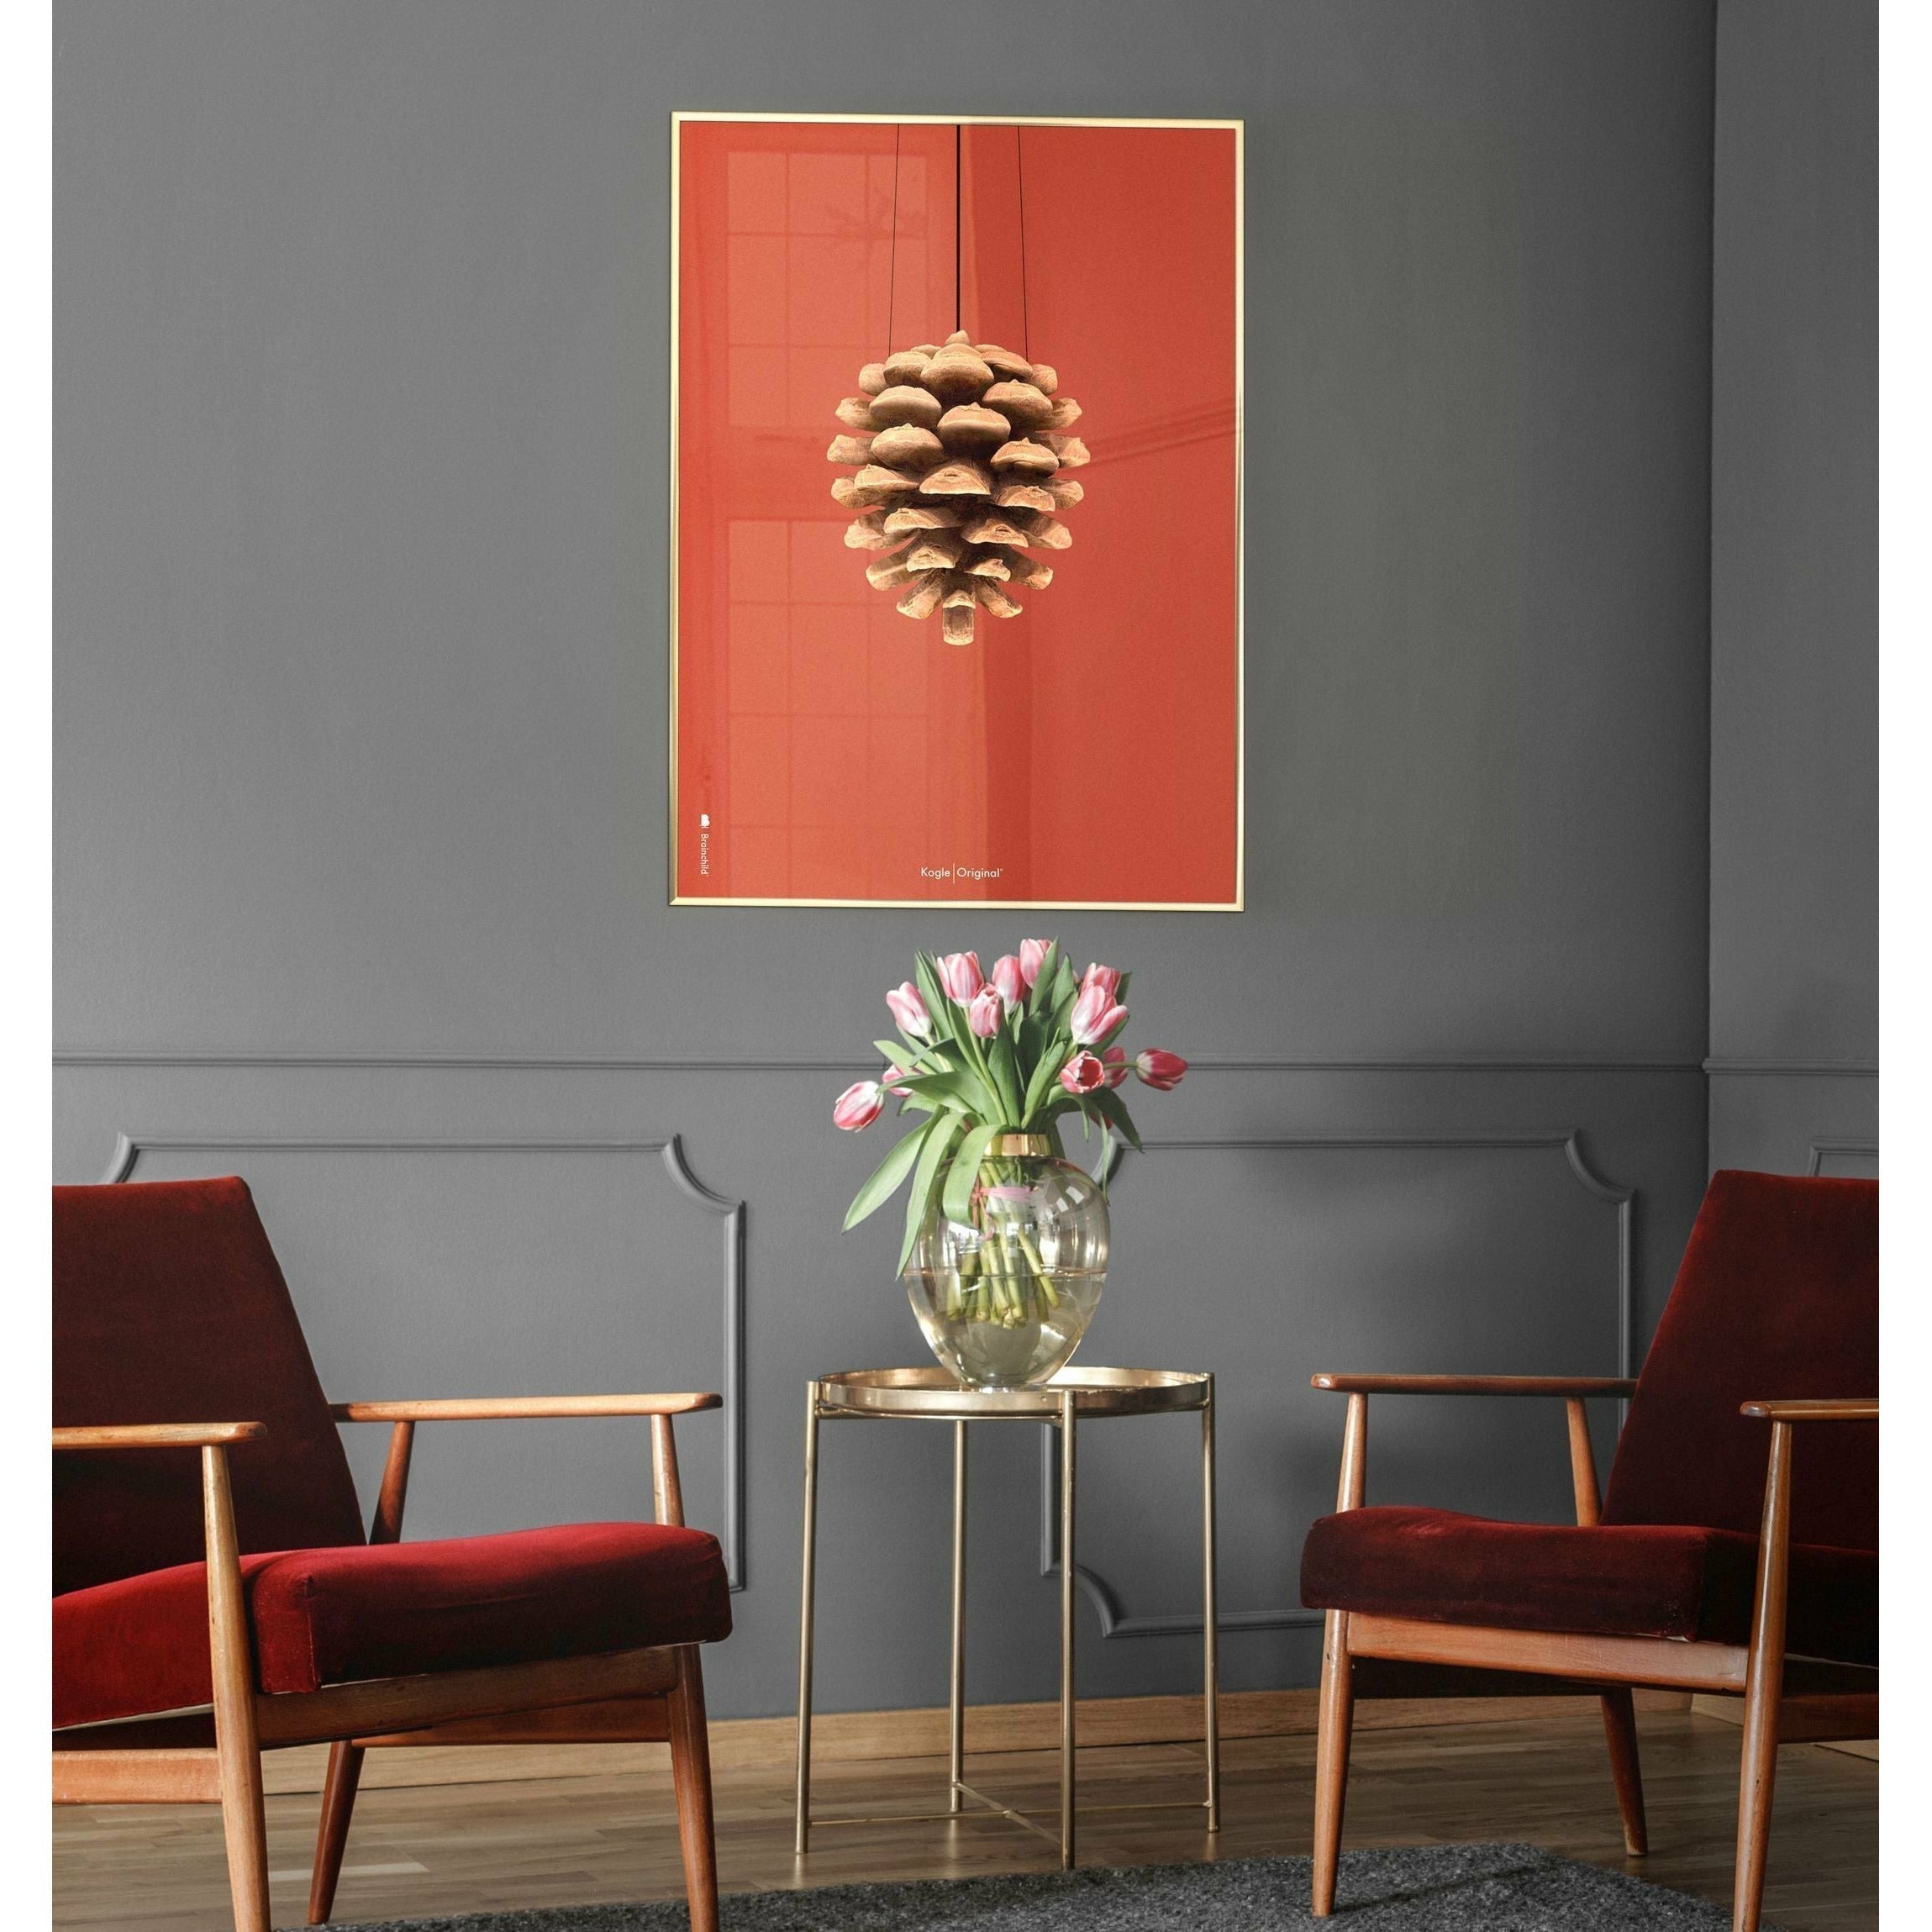 Póster clásico de cono de pino de creación, marco hecho de madera clara 30x40 cm, fondo rojo